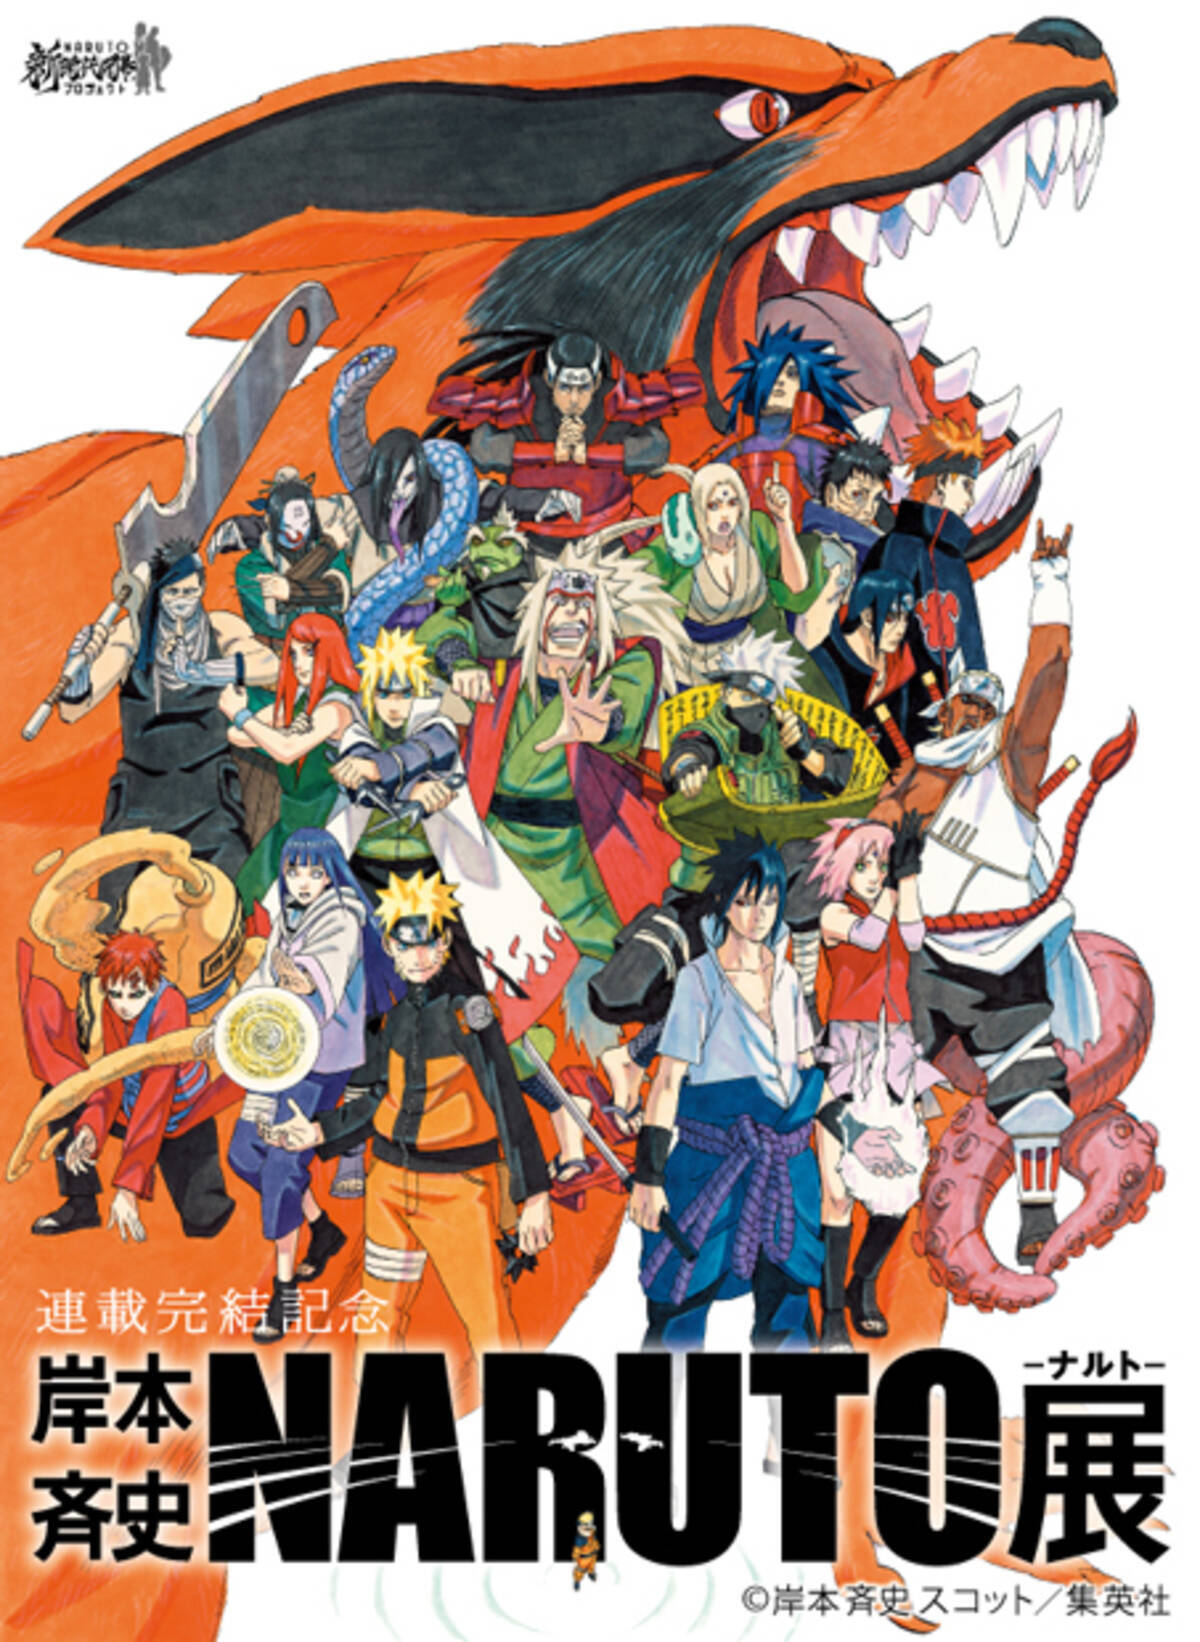 Naruto歴代キャラ集合イラスト公開 Naruto展 公式サイト本格始動 2014年12月22日 エキサイトニュース